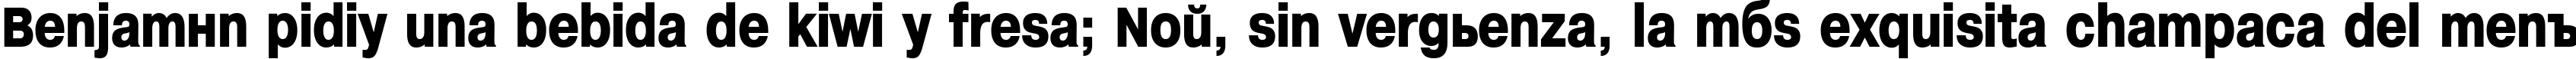 Пример написания шрифтом Helvetica Headlines текста на испанском